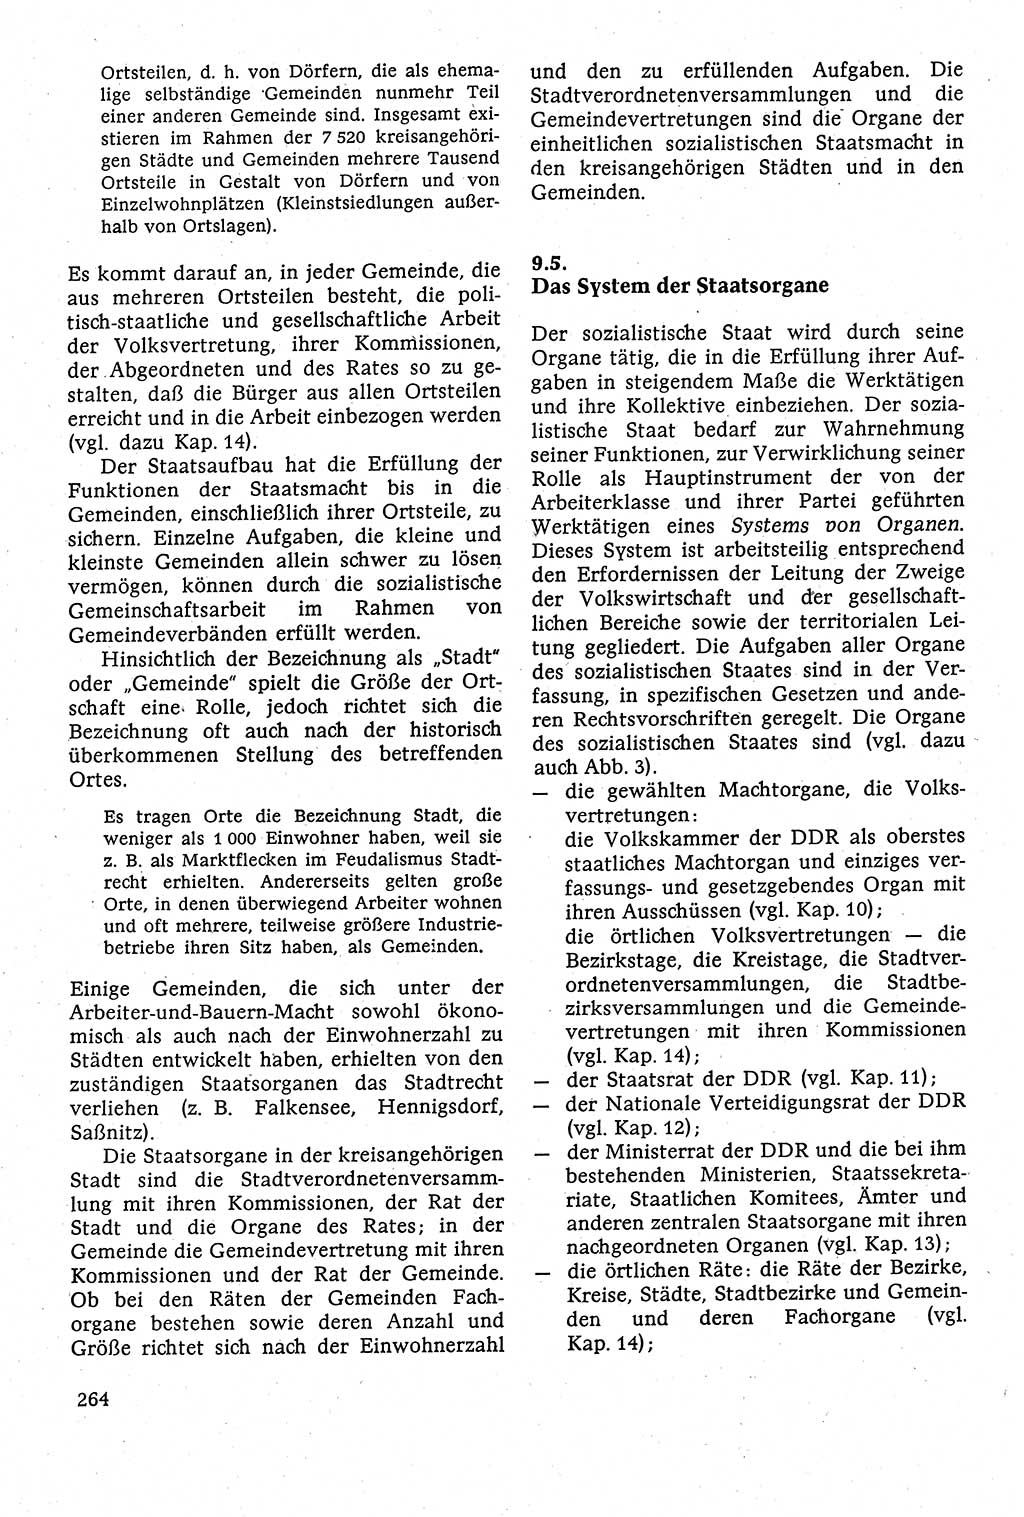 Staatsrecht der DDR [Deutsche Demokratische Republik (DDR)], Lehrbuch 1984, Seite 264 (St.-R. DDR Lb. 1984, S. 264)